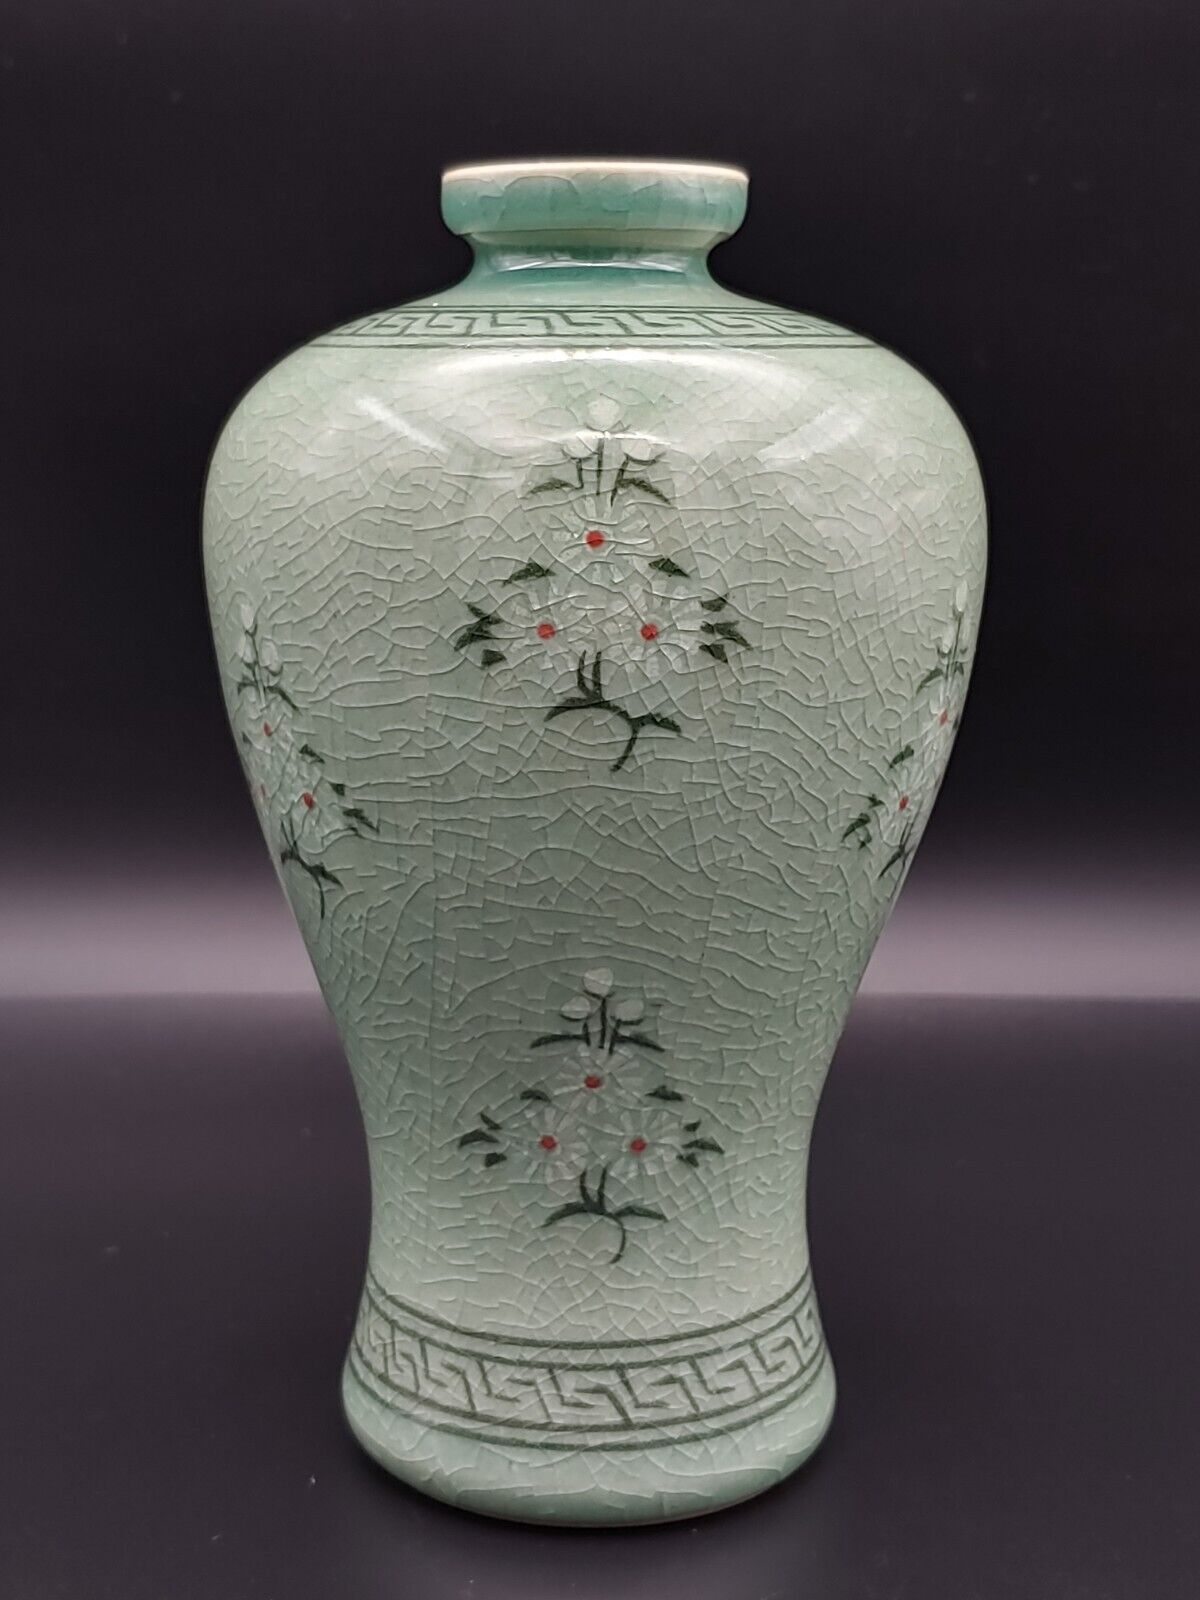 高丽釉里红青瓷器人参花梅瓶 Korean Celadon Red Glazed Inlaid Ginseng Flower Porcelain Mei Vase Ebay